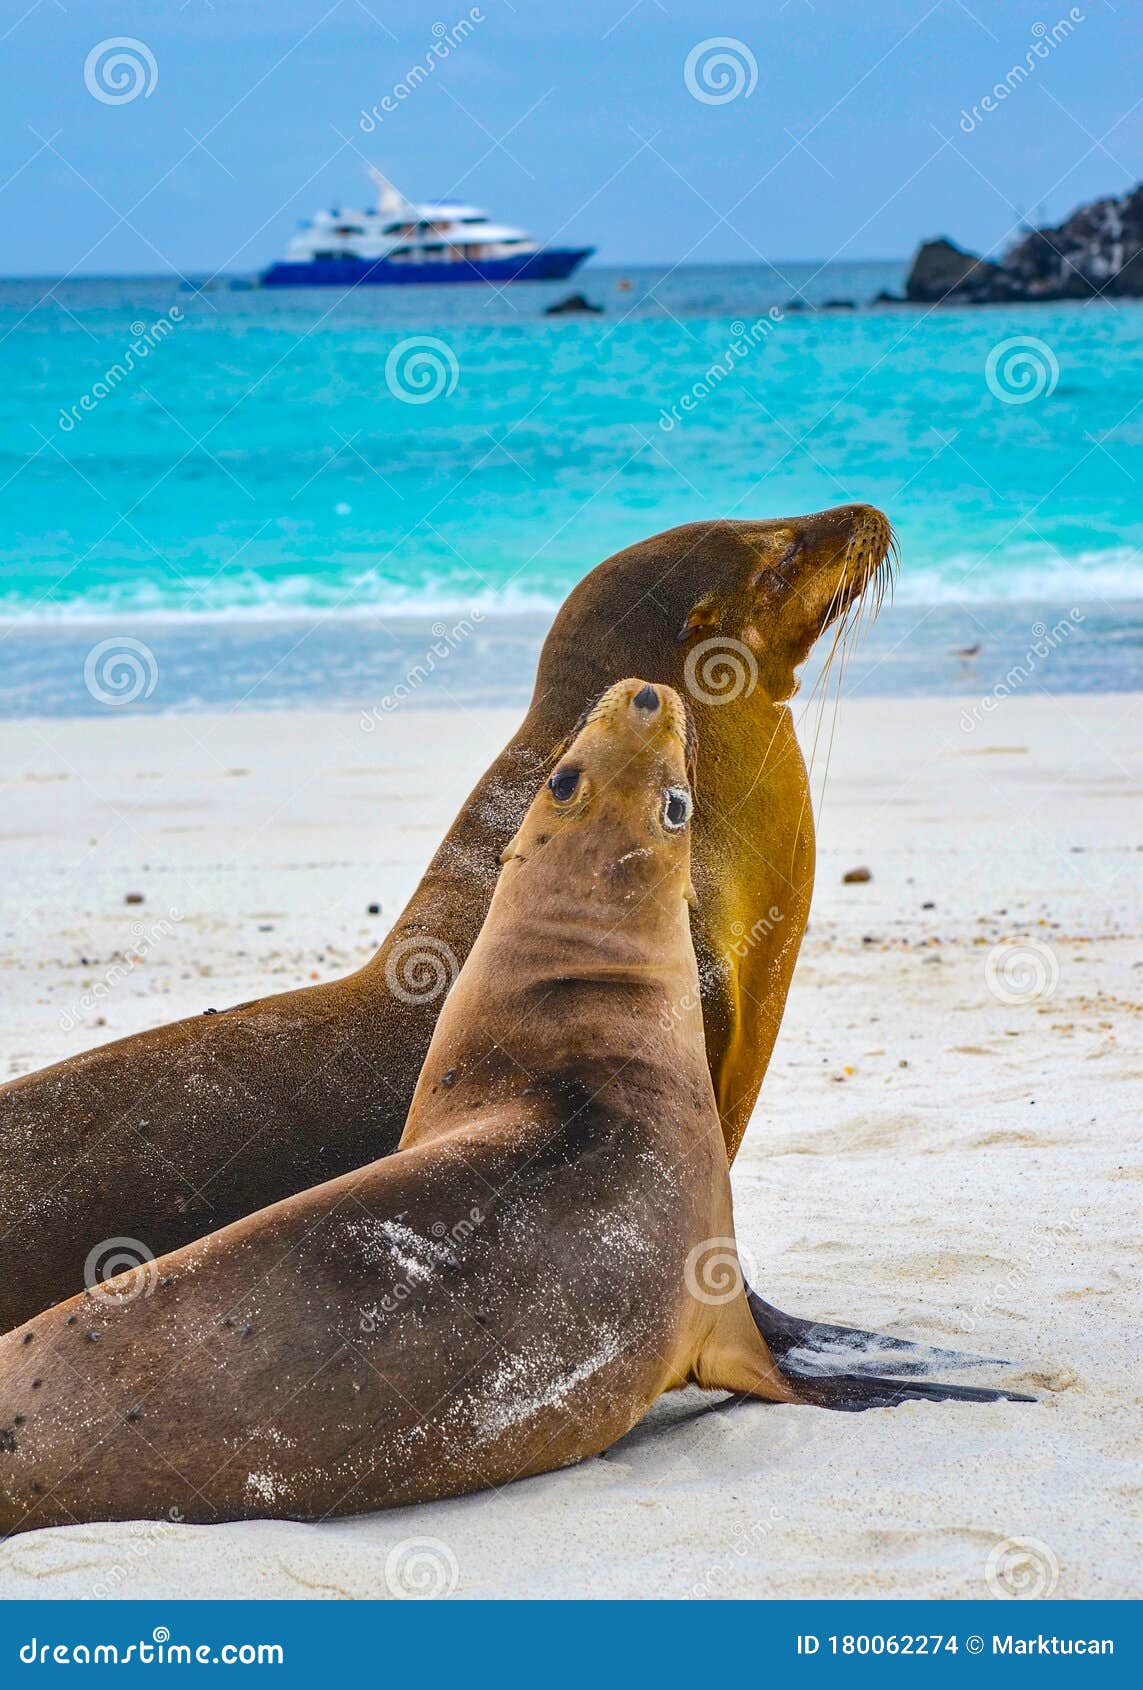 galÃÂ¡pagos sea lion zalophus wollebaeki. isla sante fe, galapagos islands, ecuador